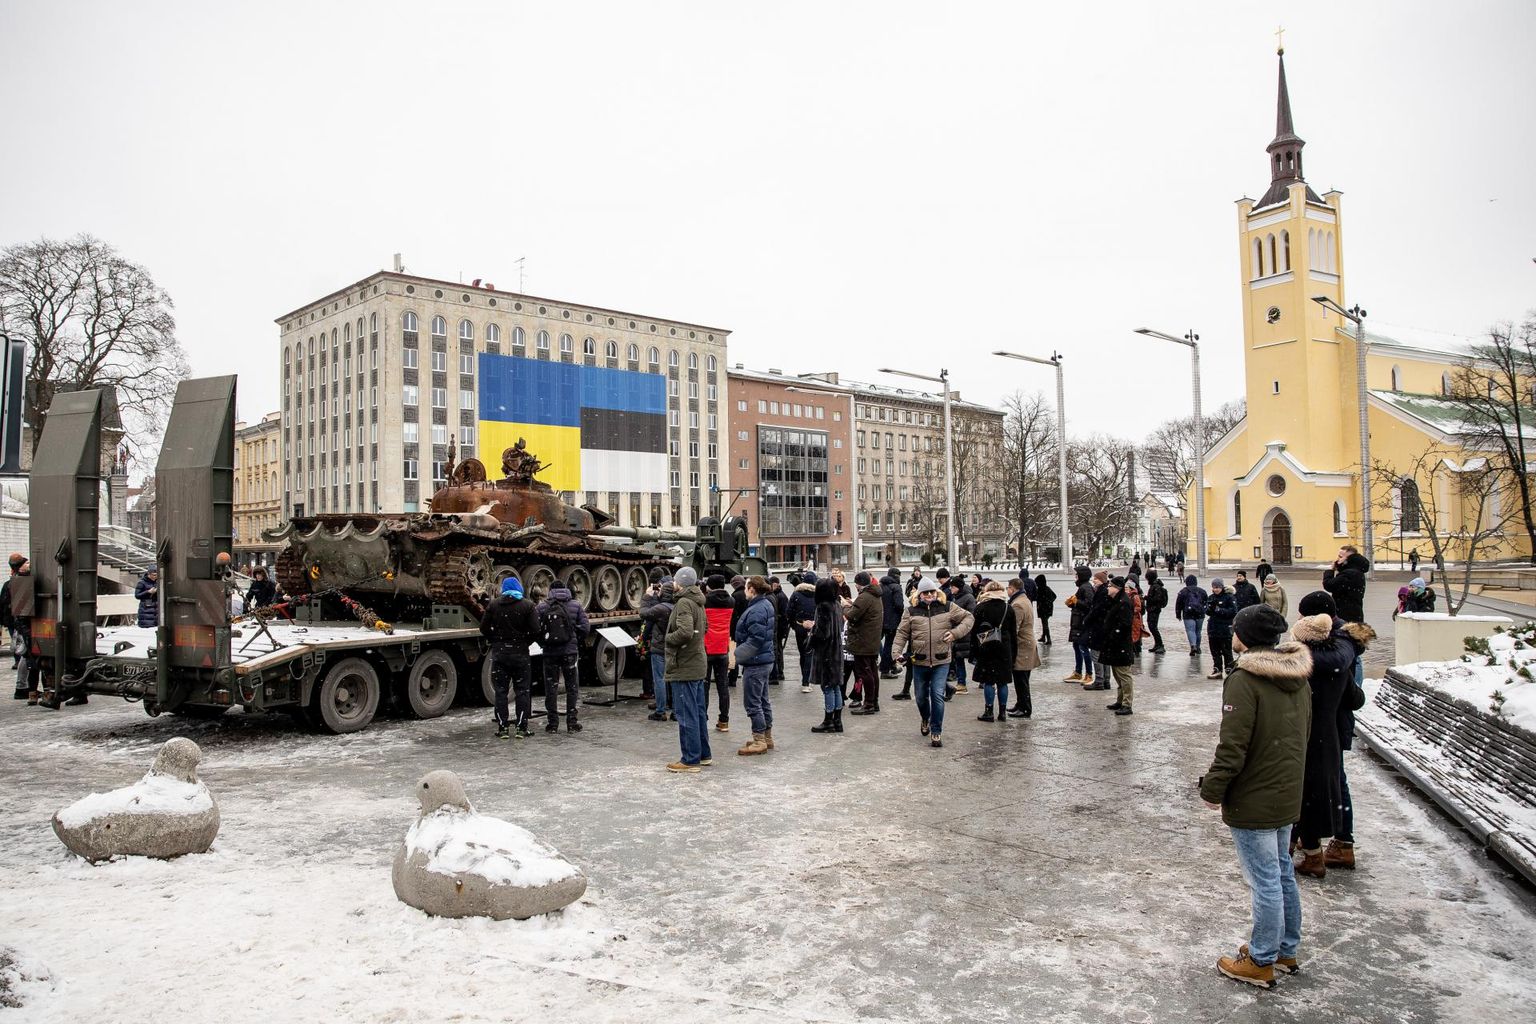 Praegu Tallinnas vabaduse väljakul eksponeeritav tank on meelitanud ligi provokaatoreid ning politsei on saanud purustatud tapamasina juurde mitu väljakutset.